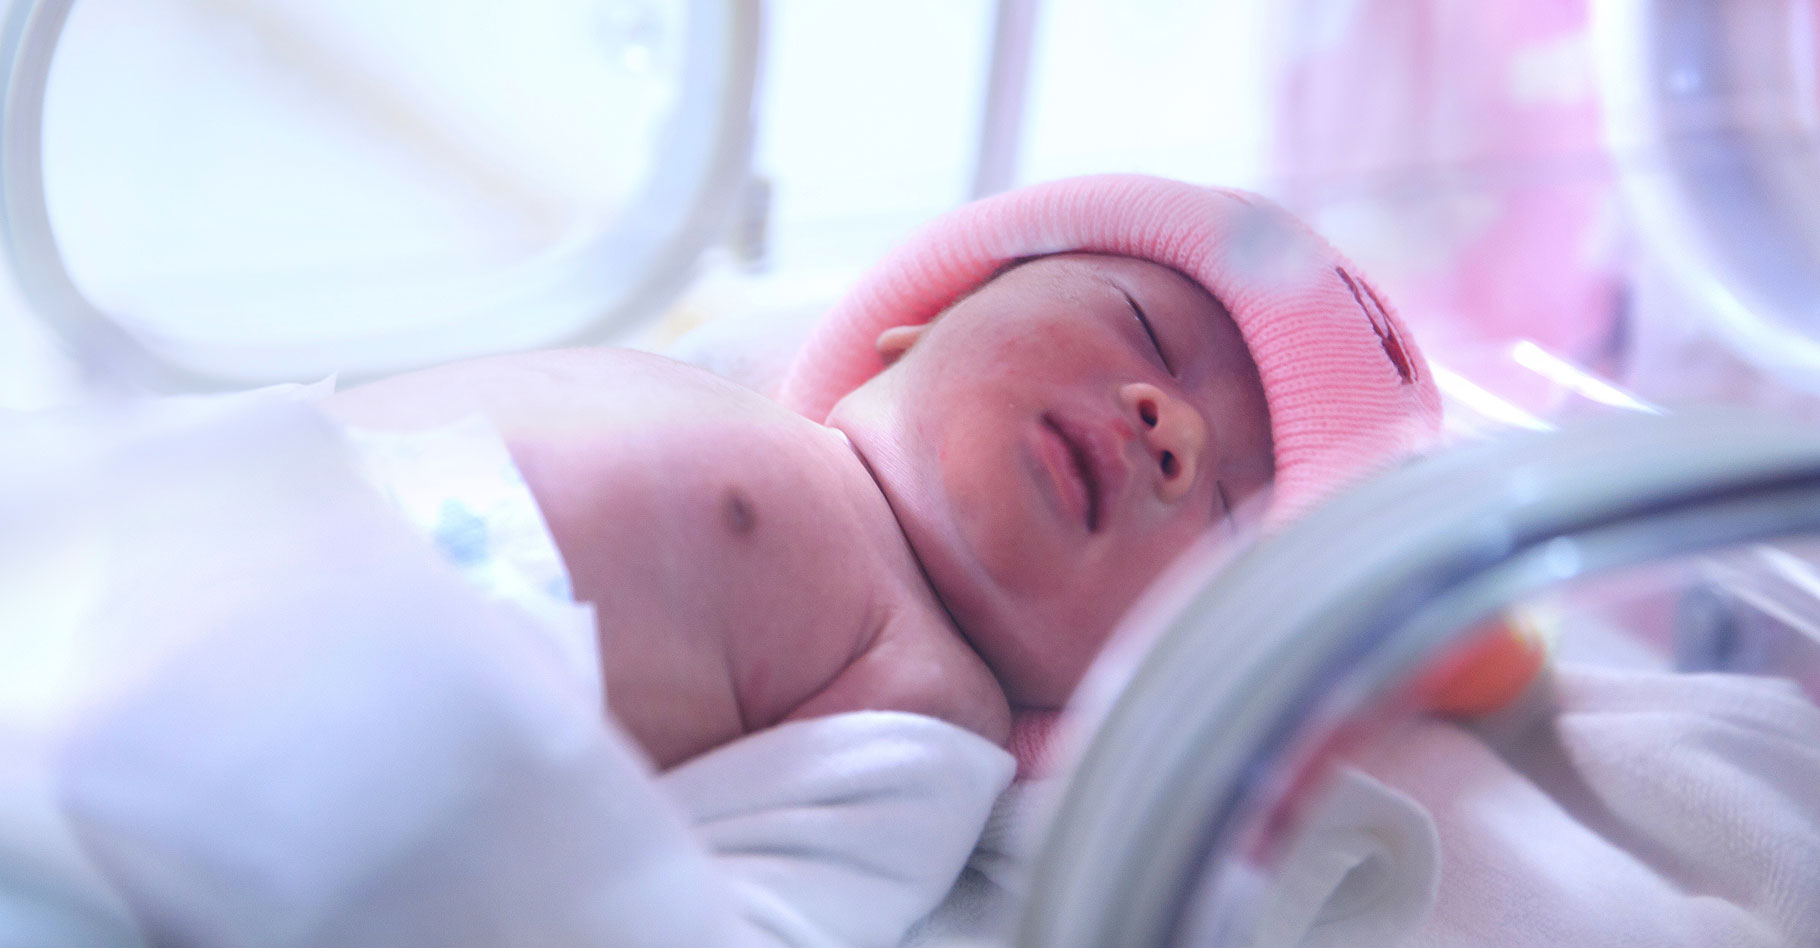 Une petite fille vient de naître, quelle est son espérance de vie ? © Naypong, Shutterstock